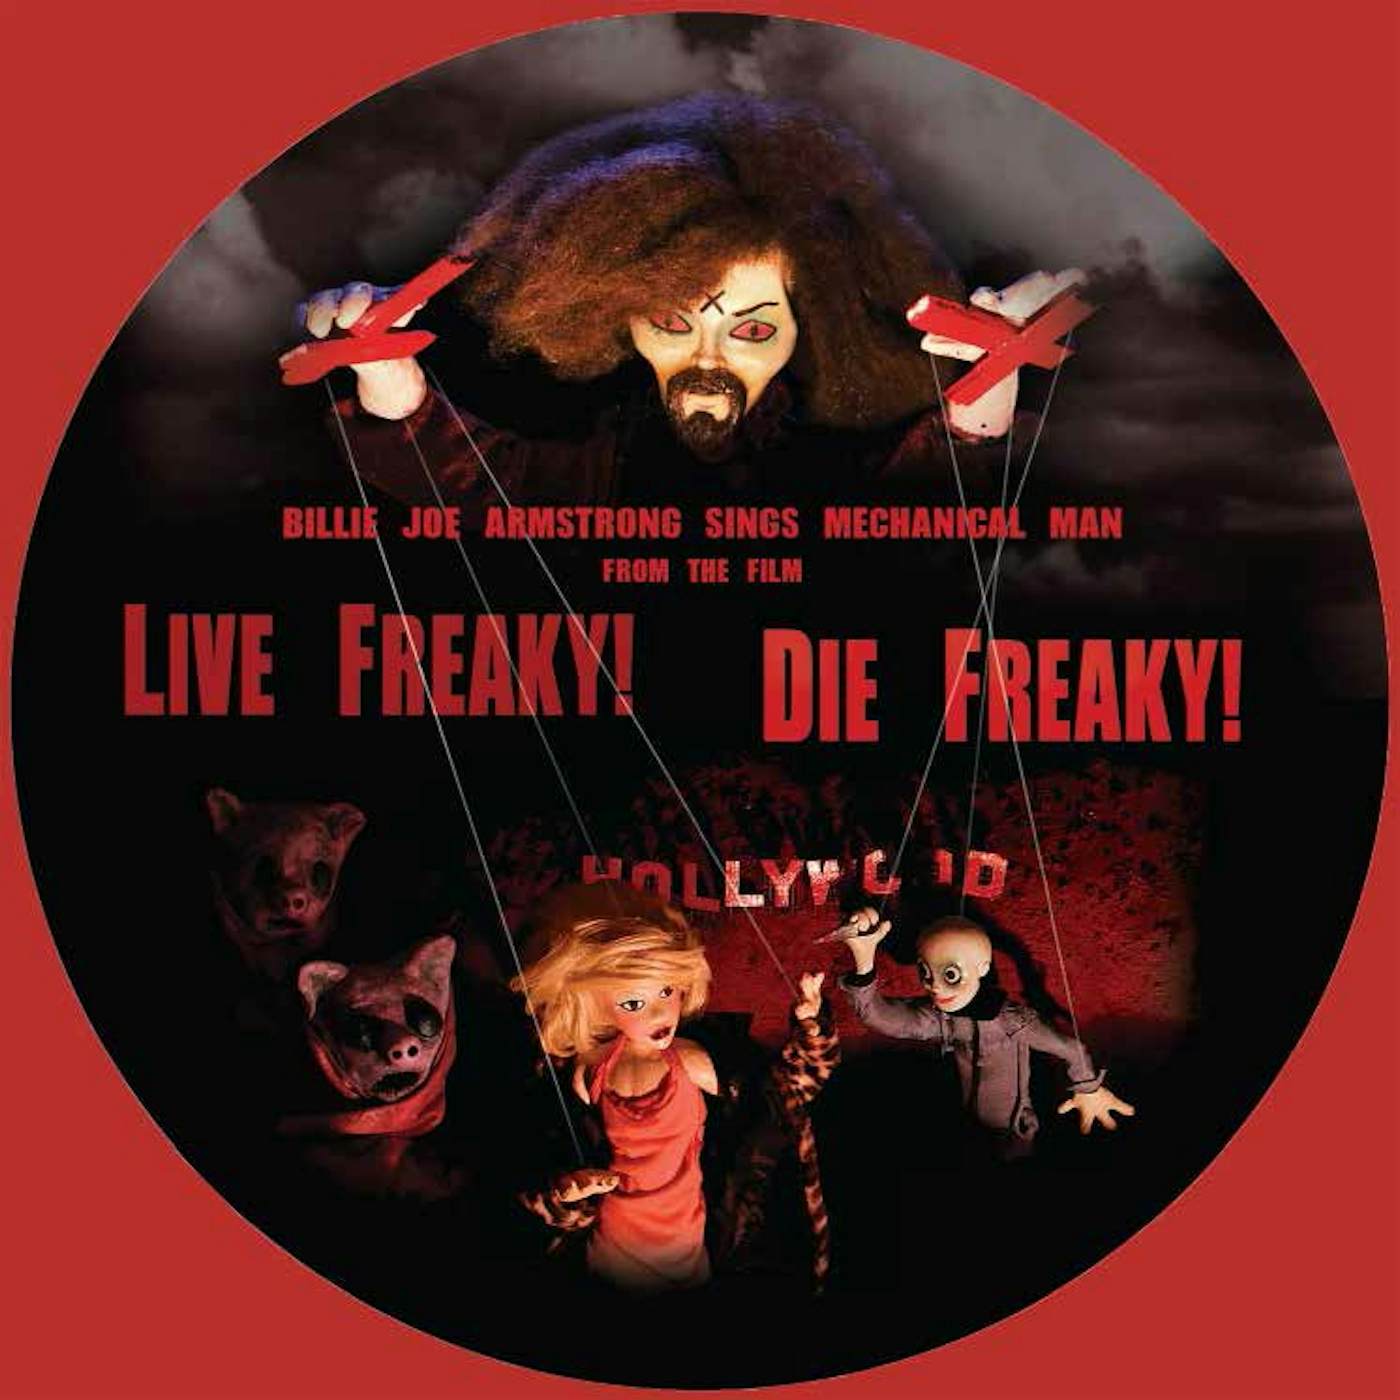 Billie Joe Armstrong / Travis Barker / Wiedlin LIVE FREAKY DIE FREAKY Vinyl Record